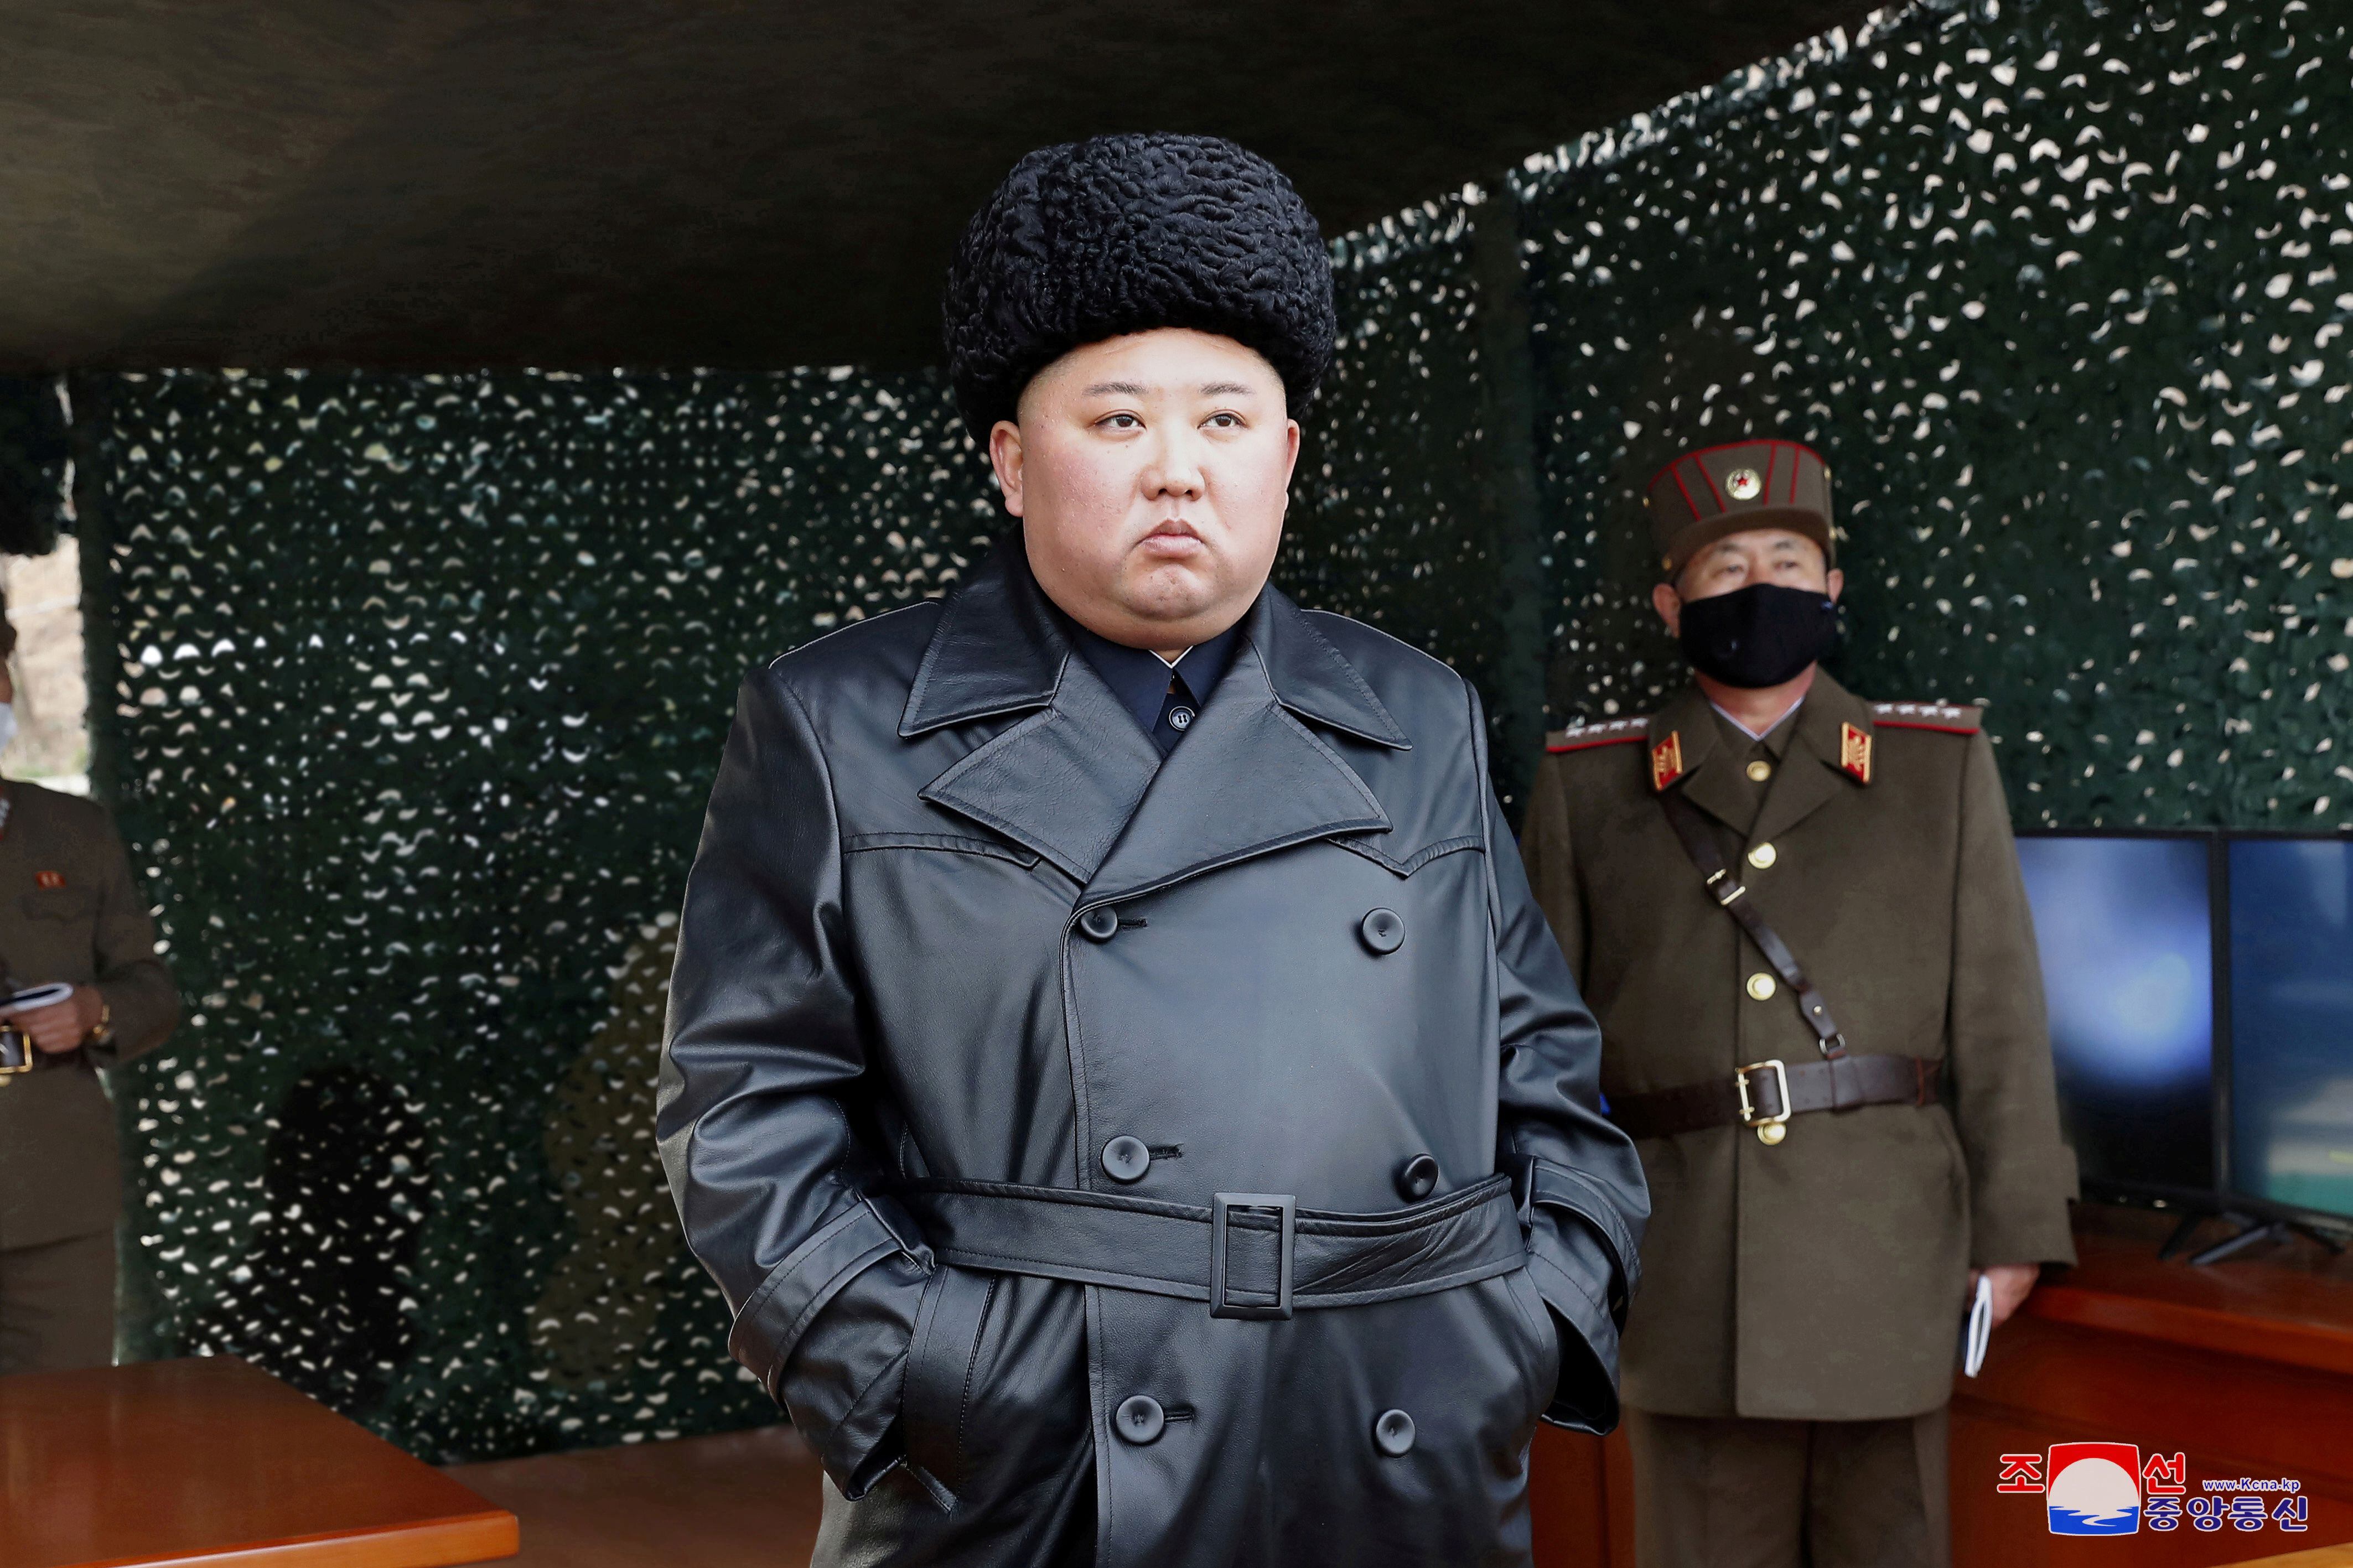  Kim Jong-un. KCNA via REUTERS